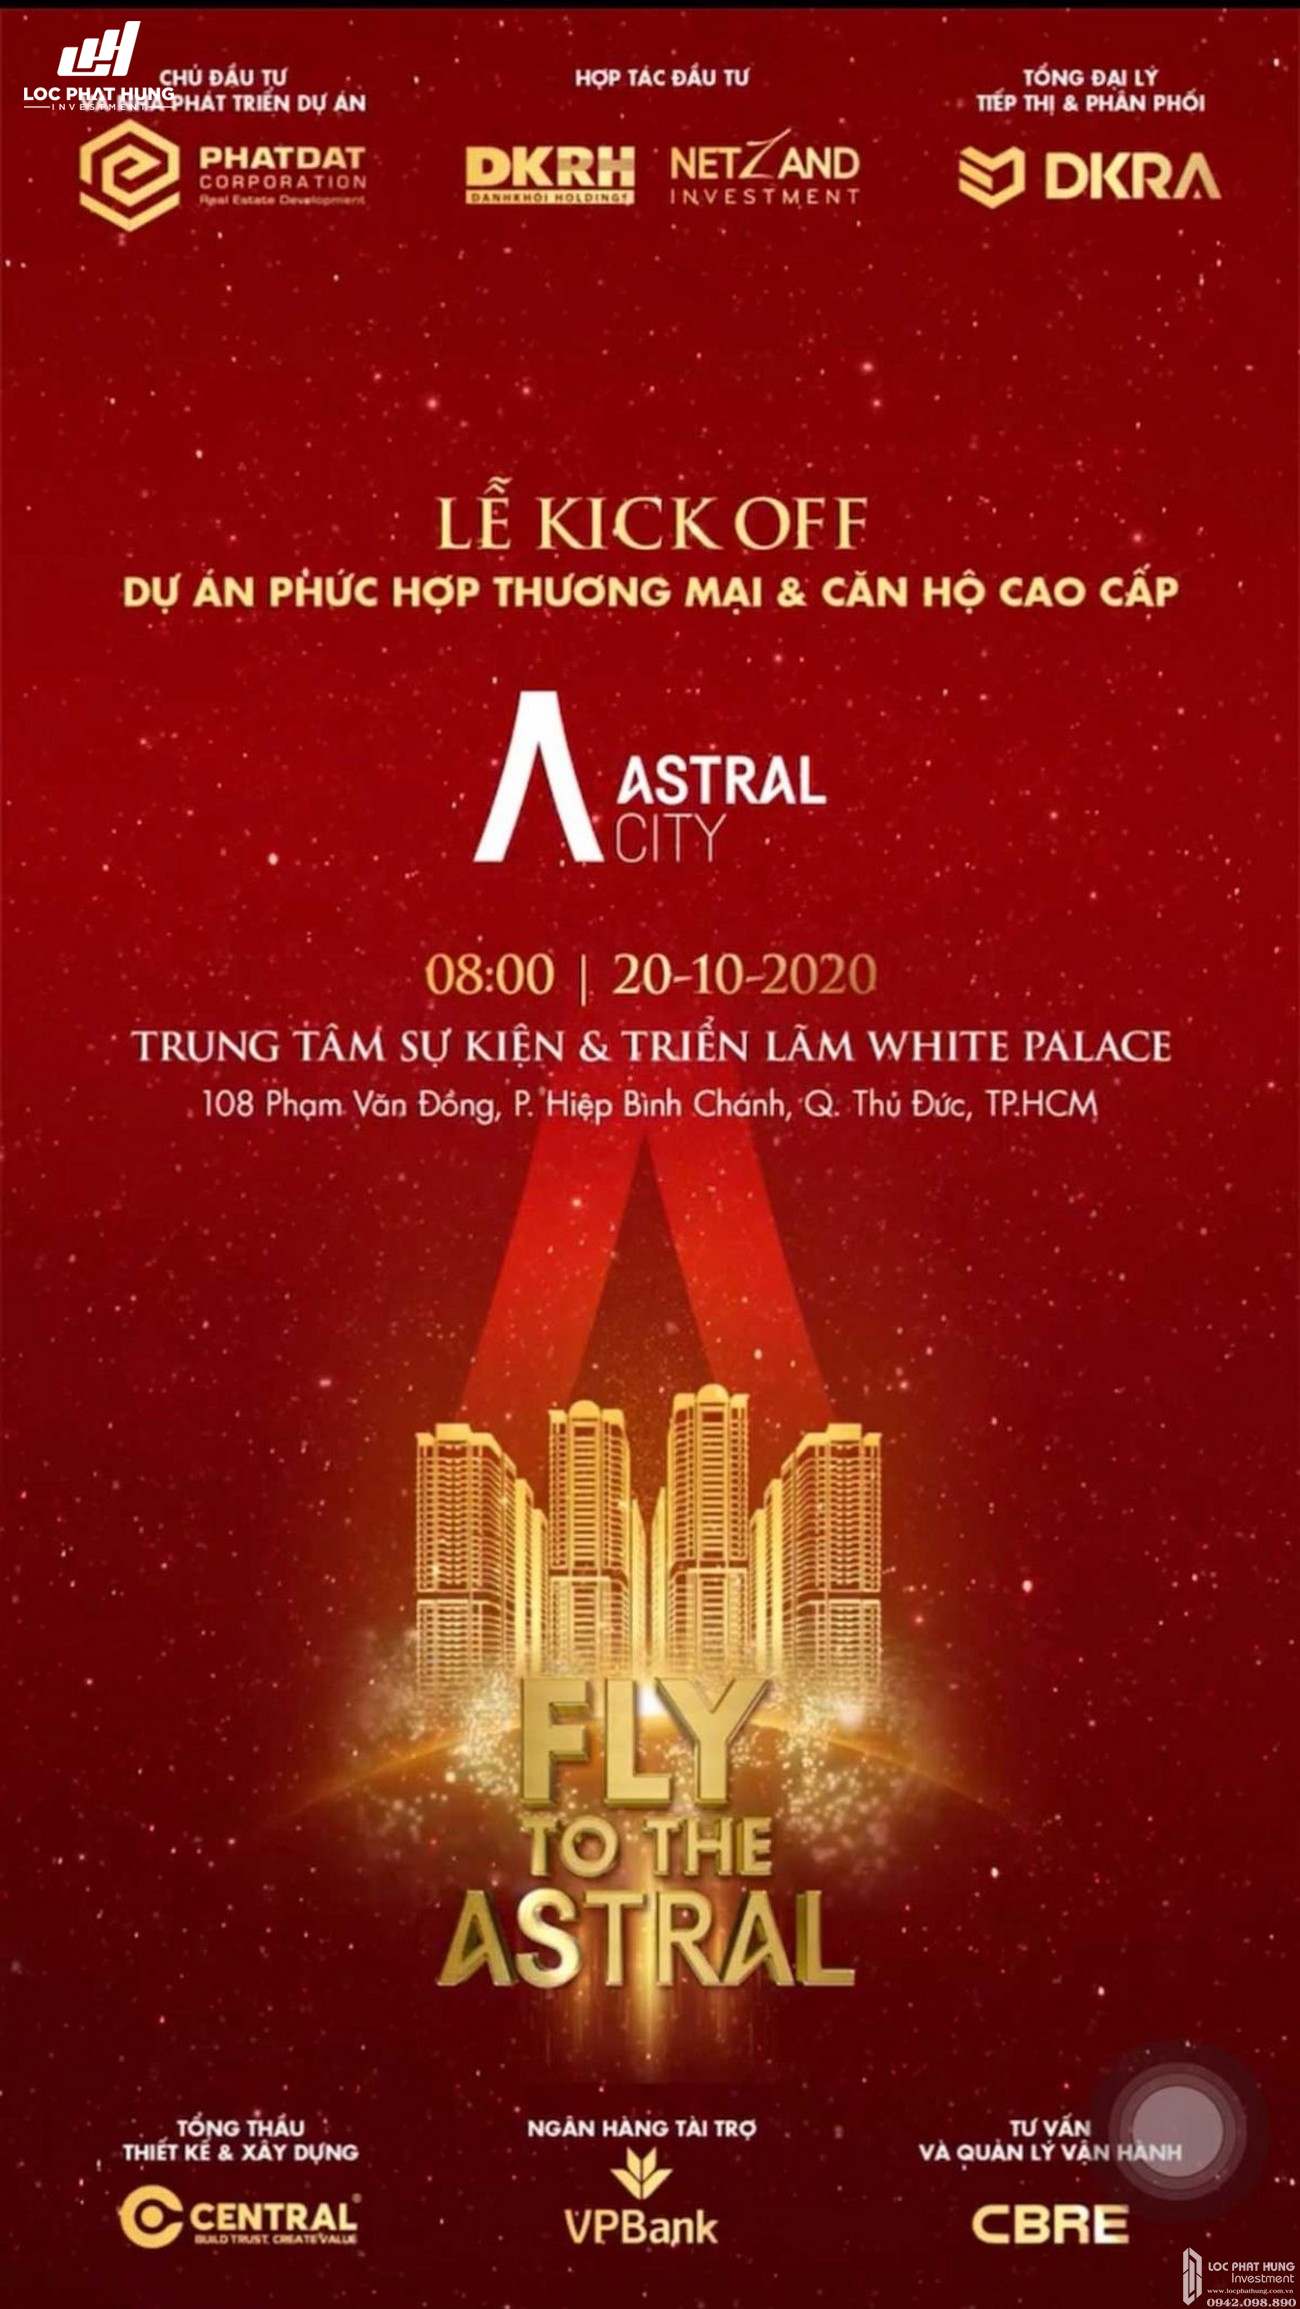 Lễ Kick off dự án Astral City Bình Dương sẽ diễn ra vào ngày 20/10/2020